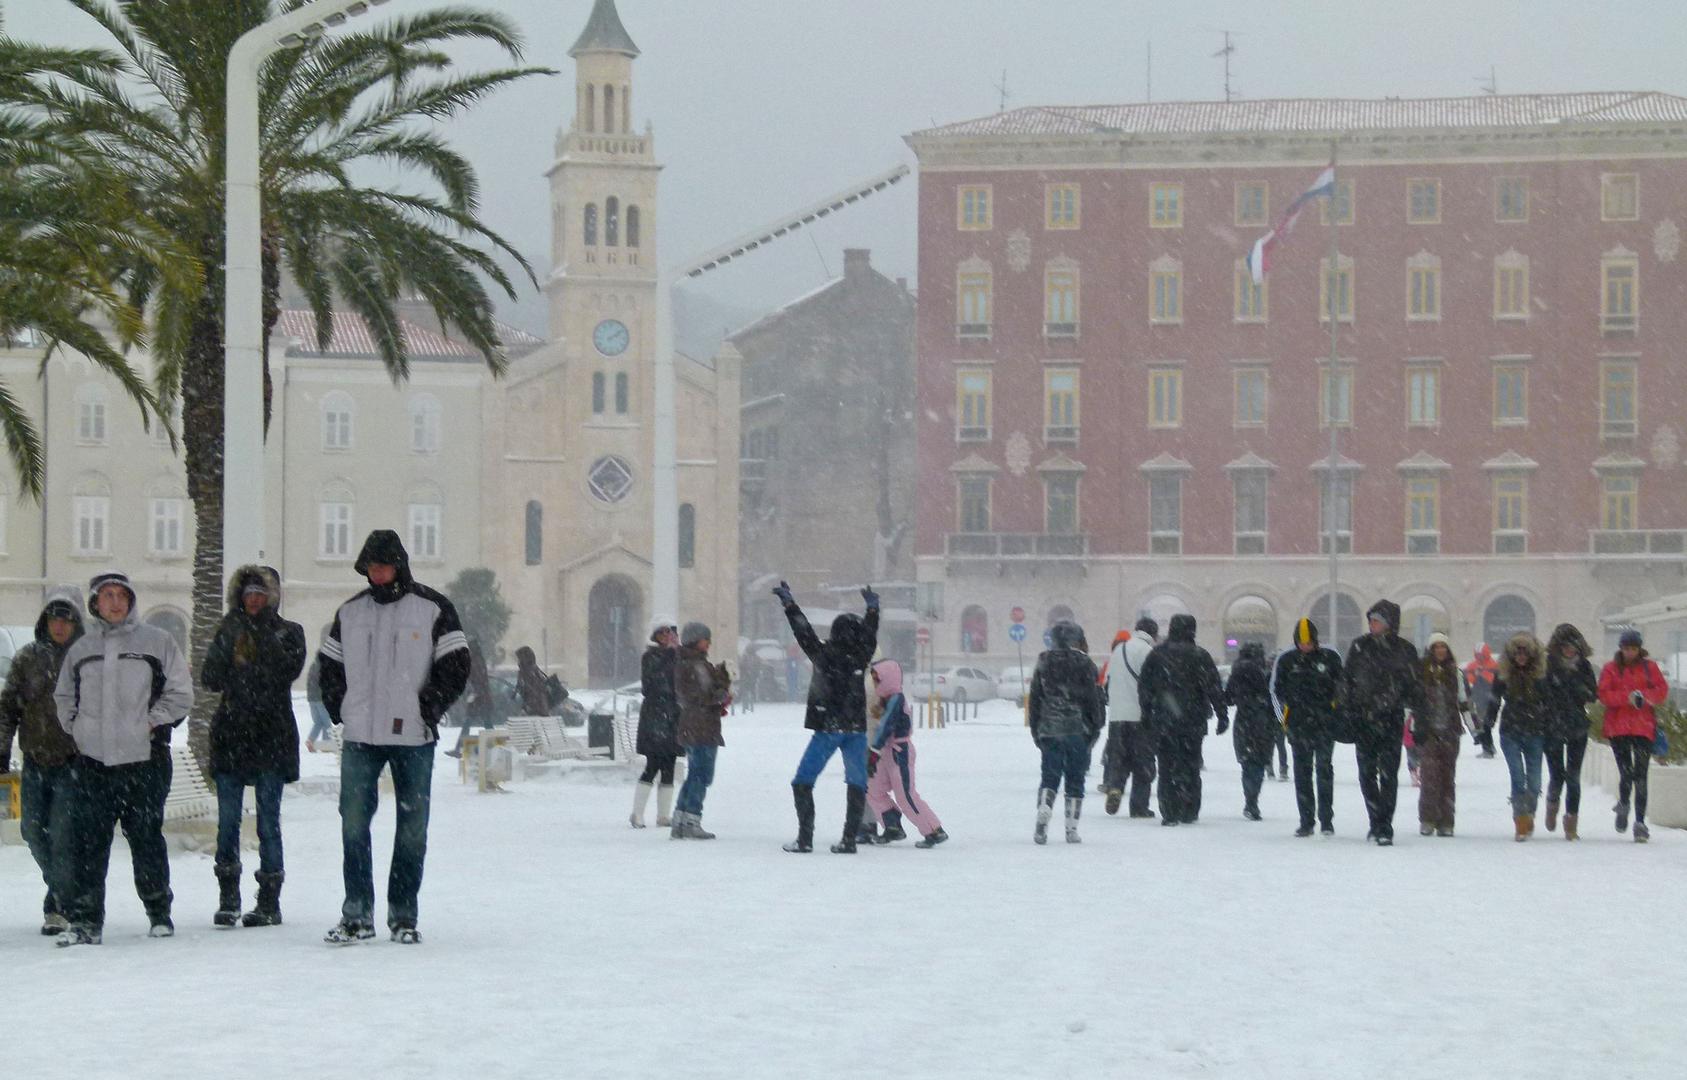 Tadašnji gradonačelnik Željko Kerum proglasio je "snježni dan", što znači da nisu radile škole, gradska uprava kao ni poduzeća u vlasništvu grada. Gradski promet bio je u potpunosti paraliziran, a život u Split je stao. 

